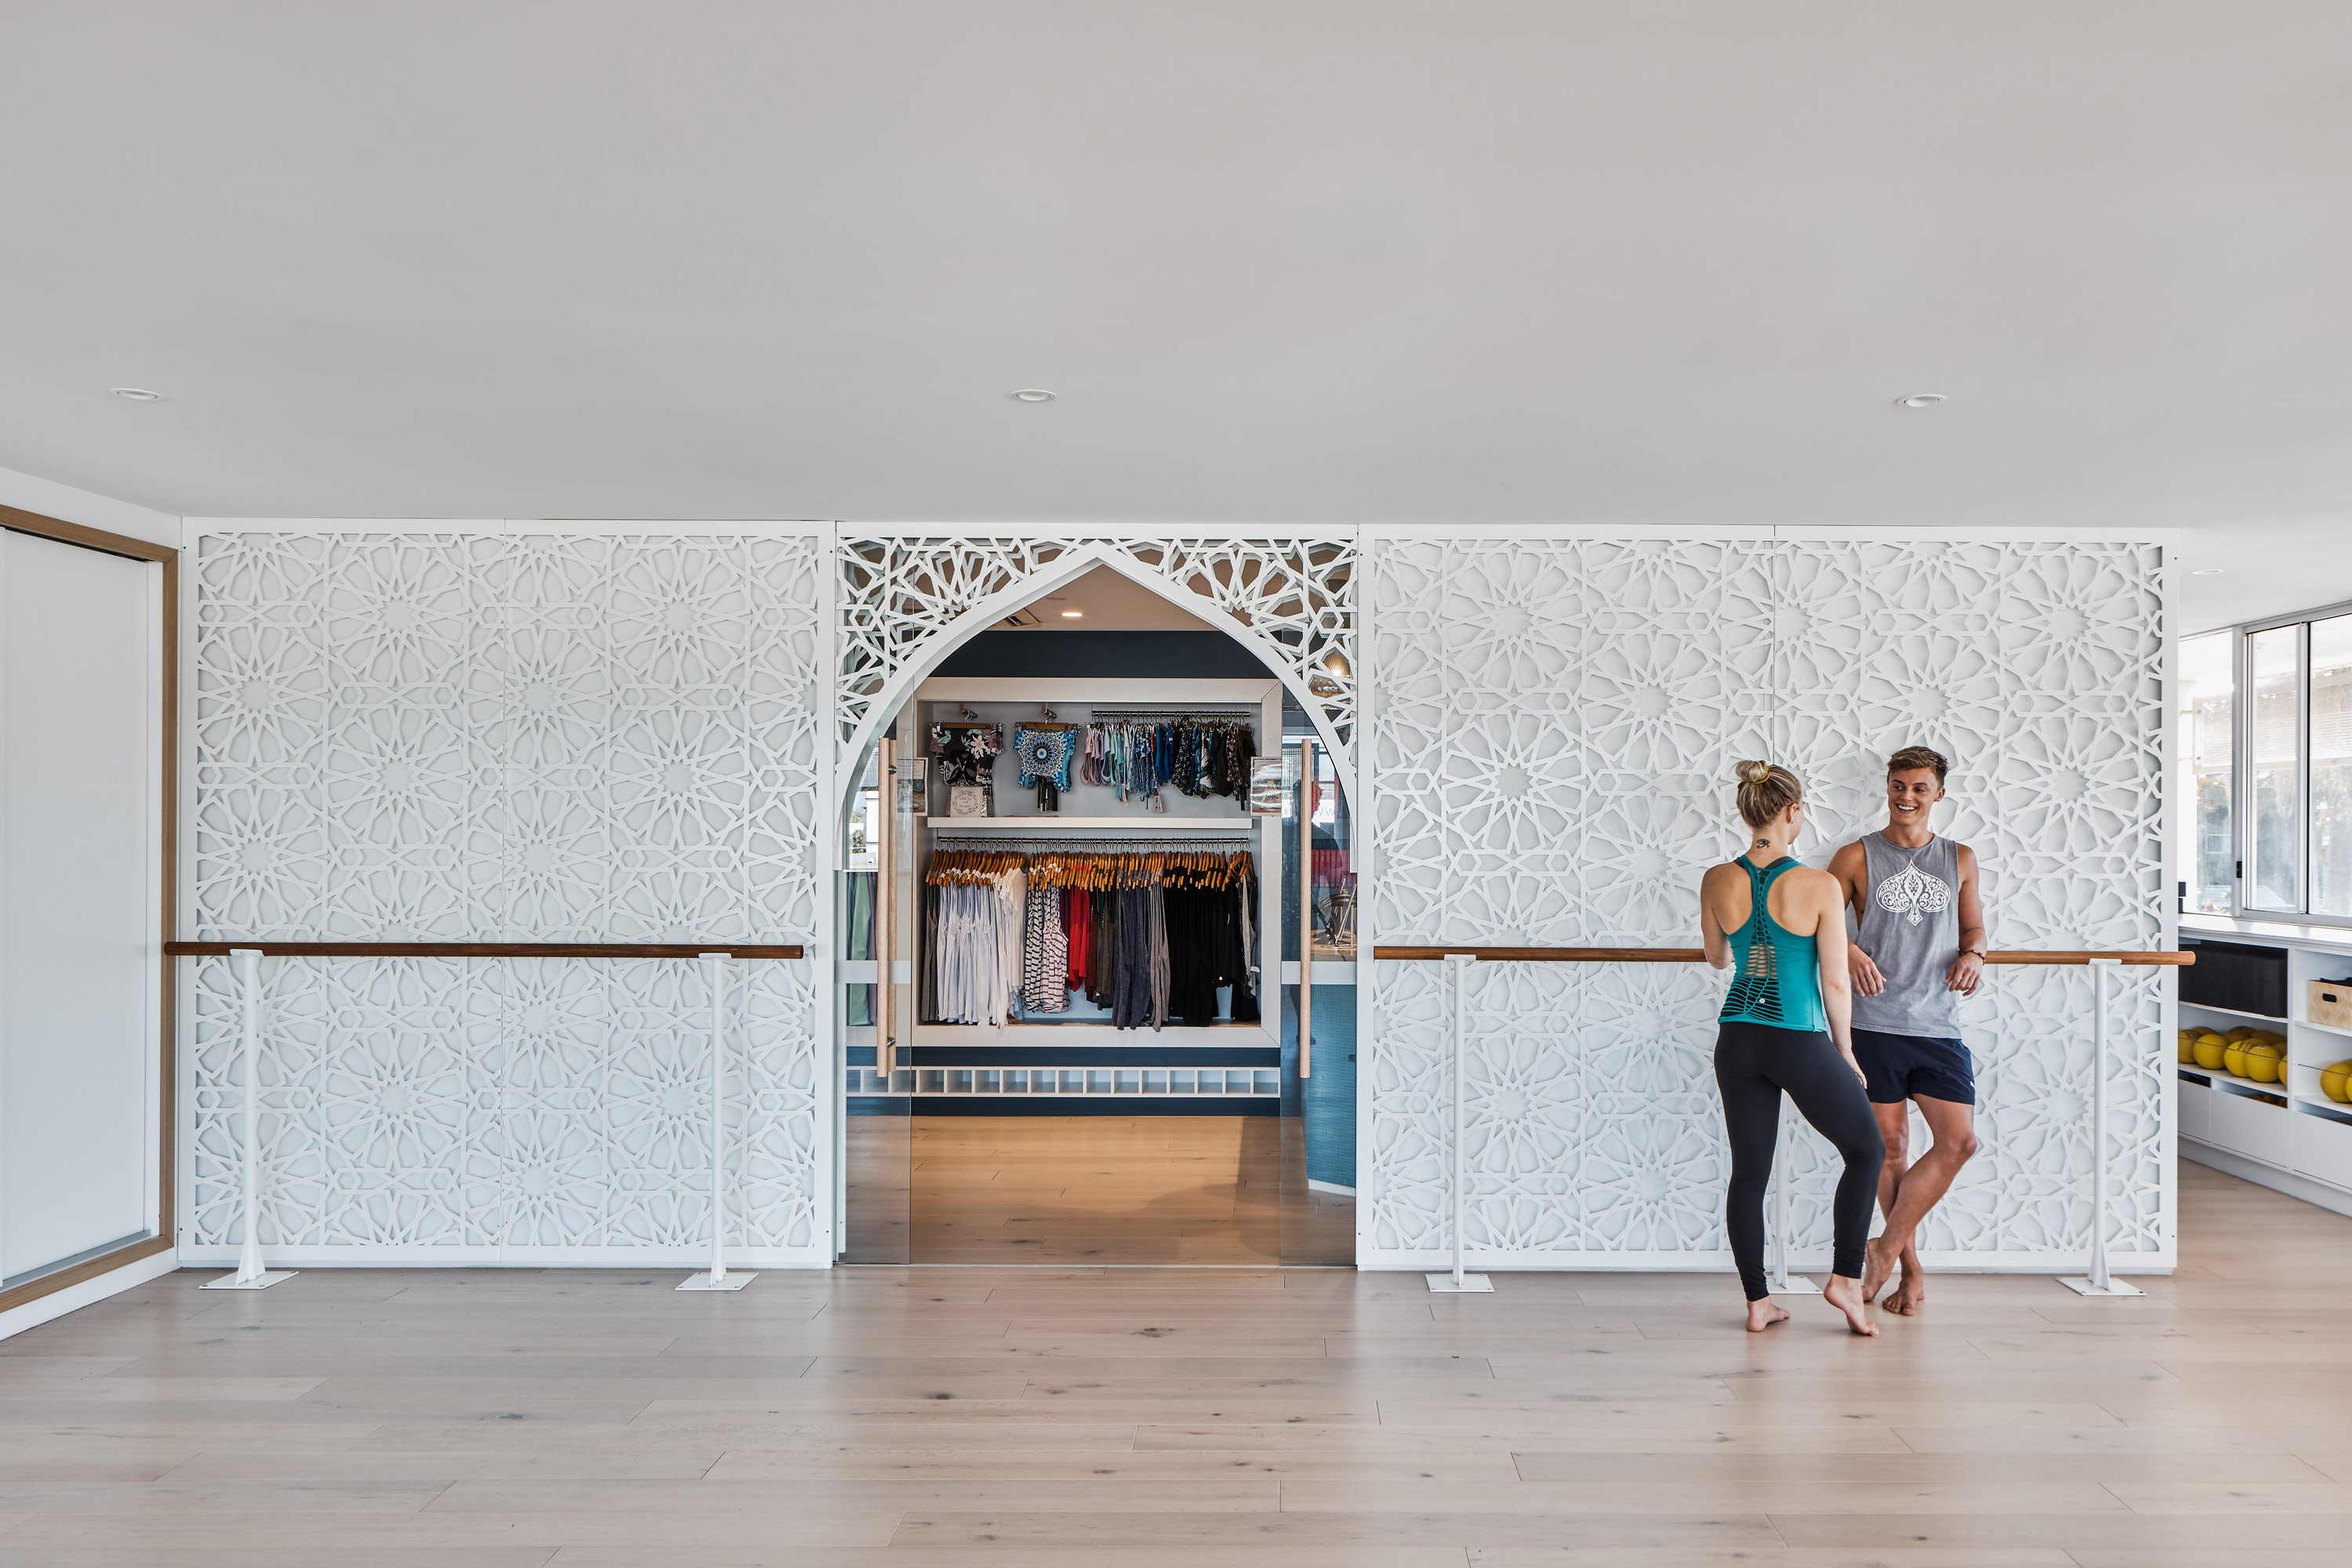 Yoga studio  Interior Design Ideas